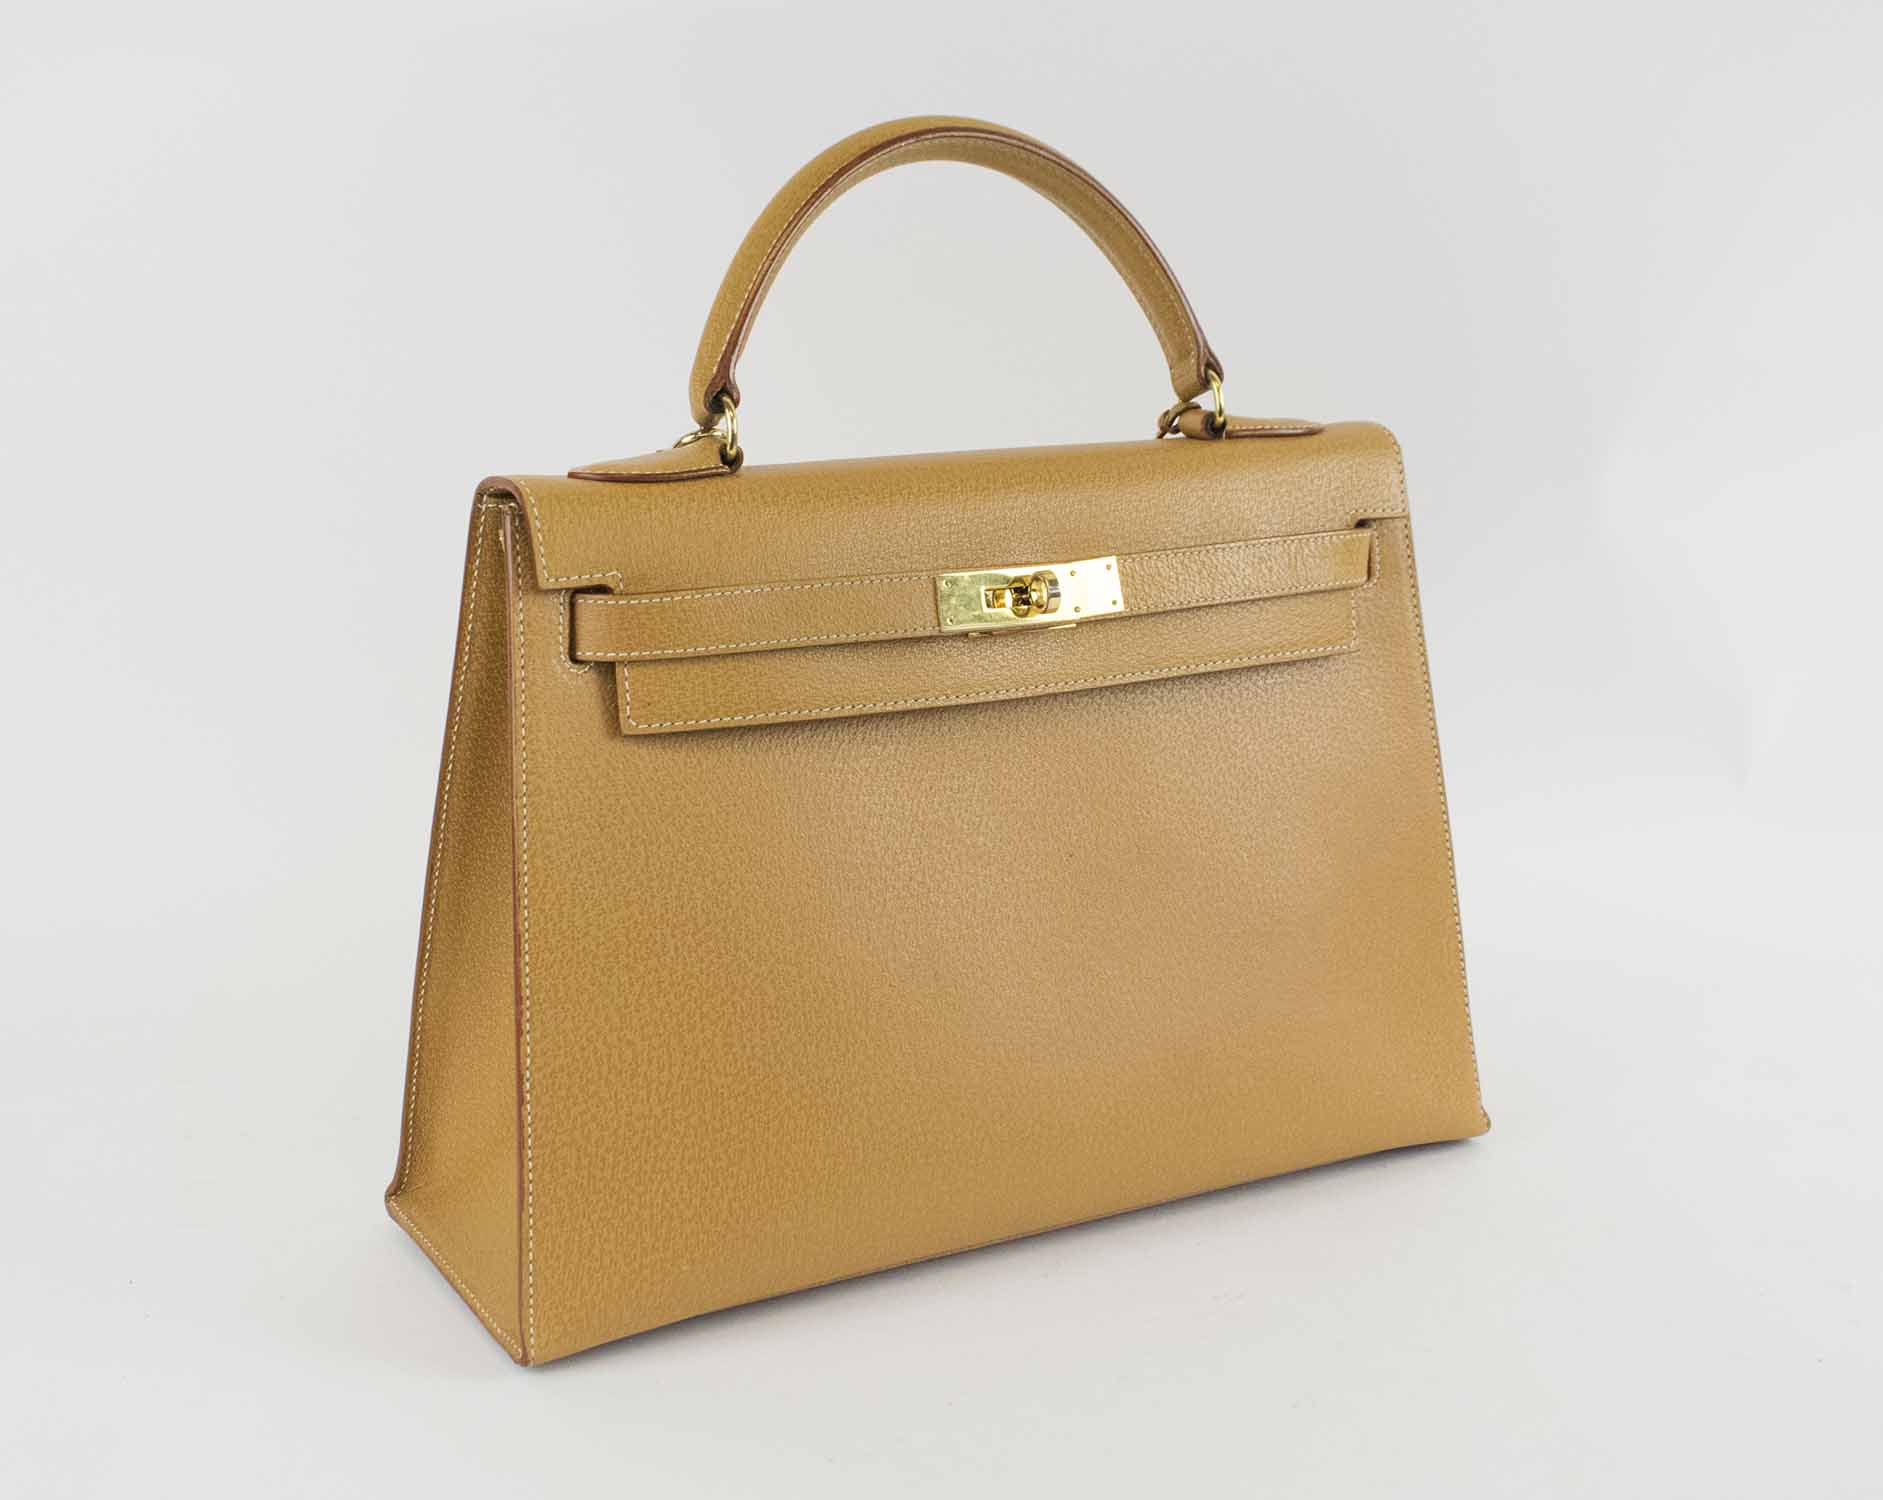 LEDERER DE PARIS 32 KELLY BAG, leather with gold tone hardware